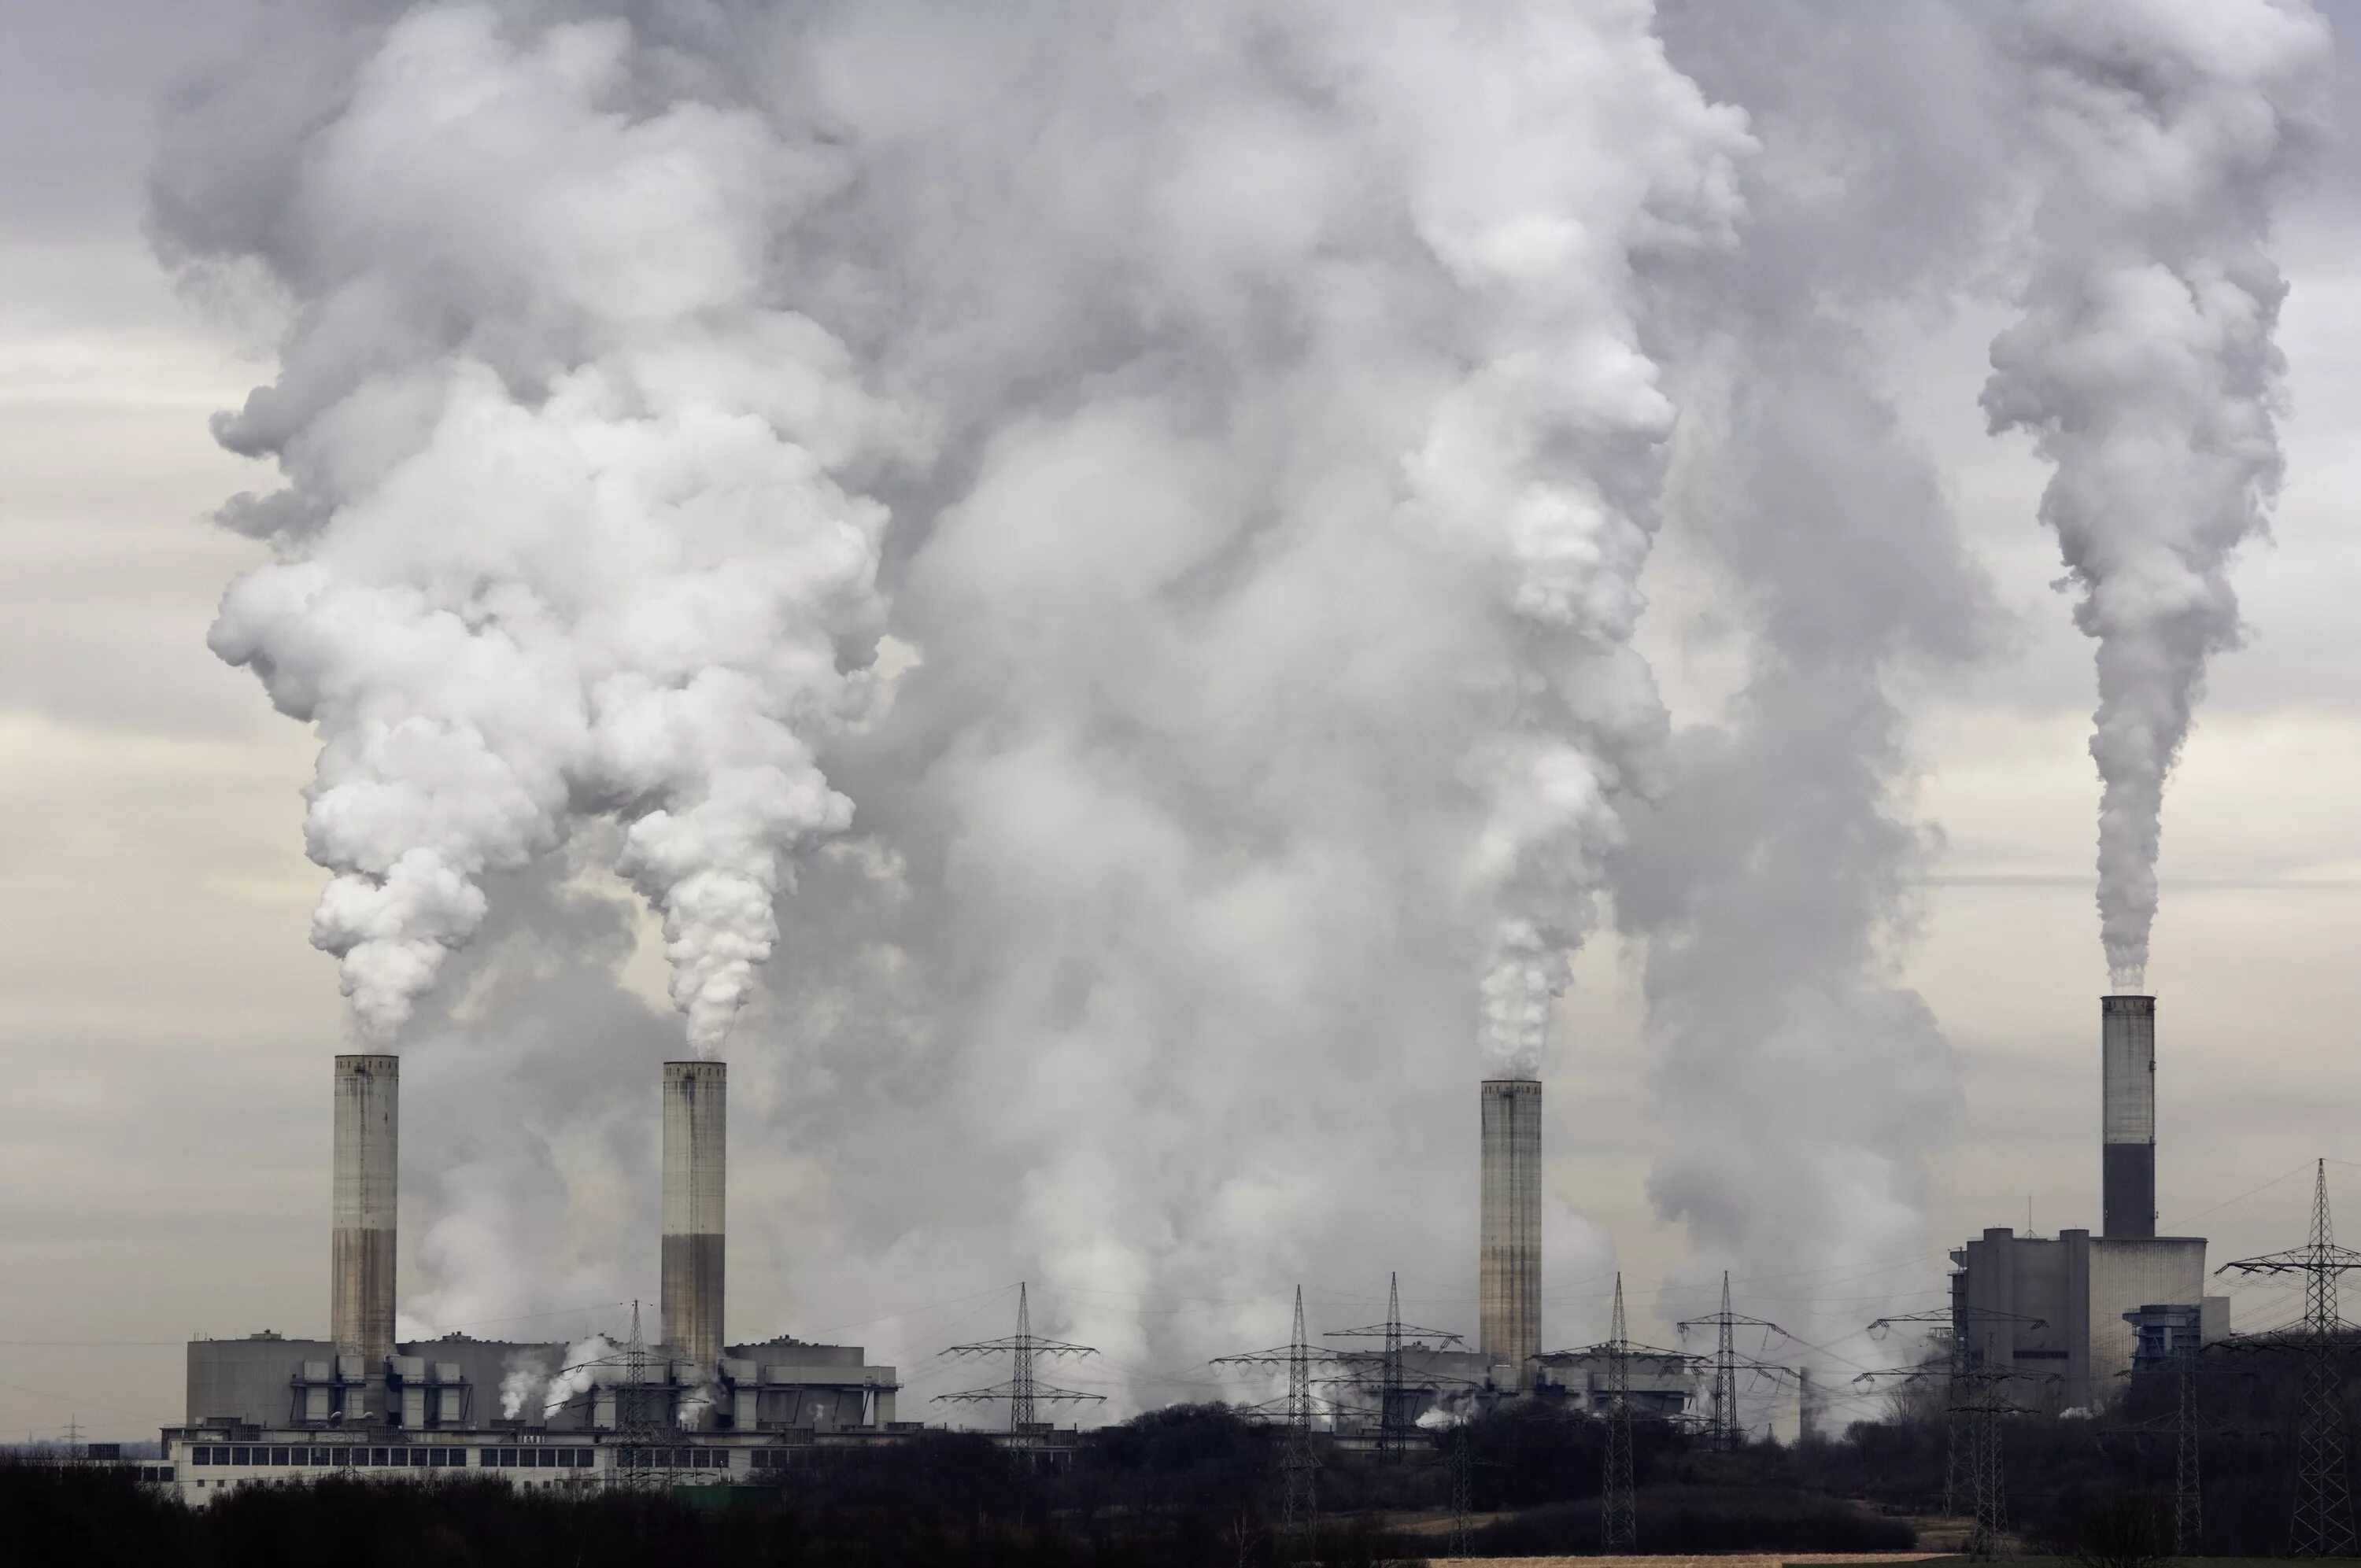 Газ жизни в атмосфере. Загрязнение воздуха. Выбросы вредных веществ в атмосферу. Загрязнение заводами. Экология загрязнение воздуха.